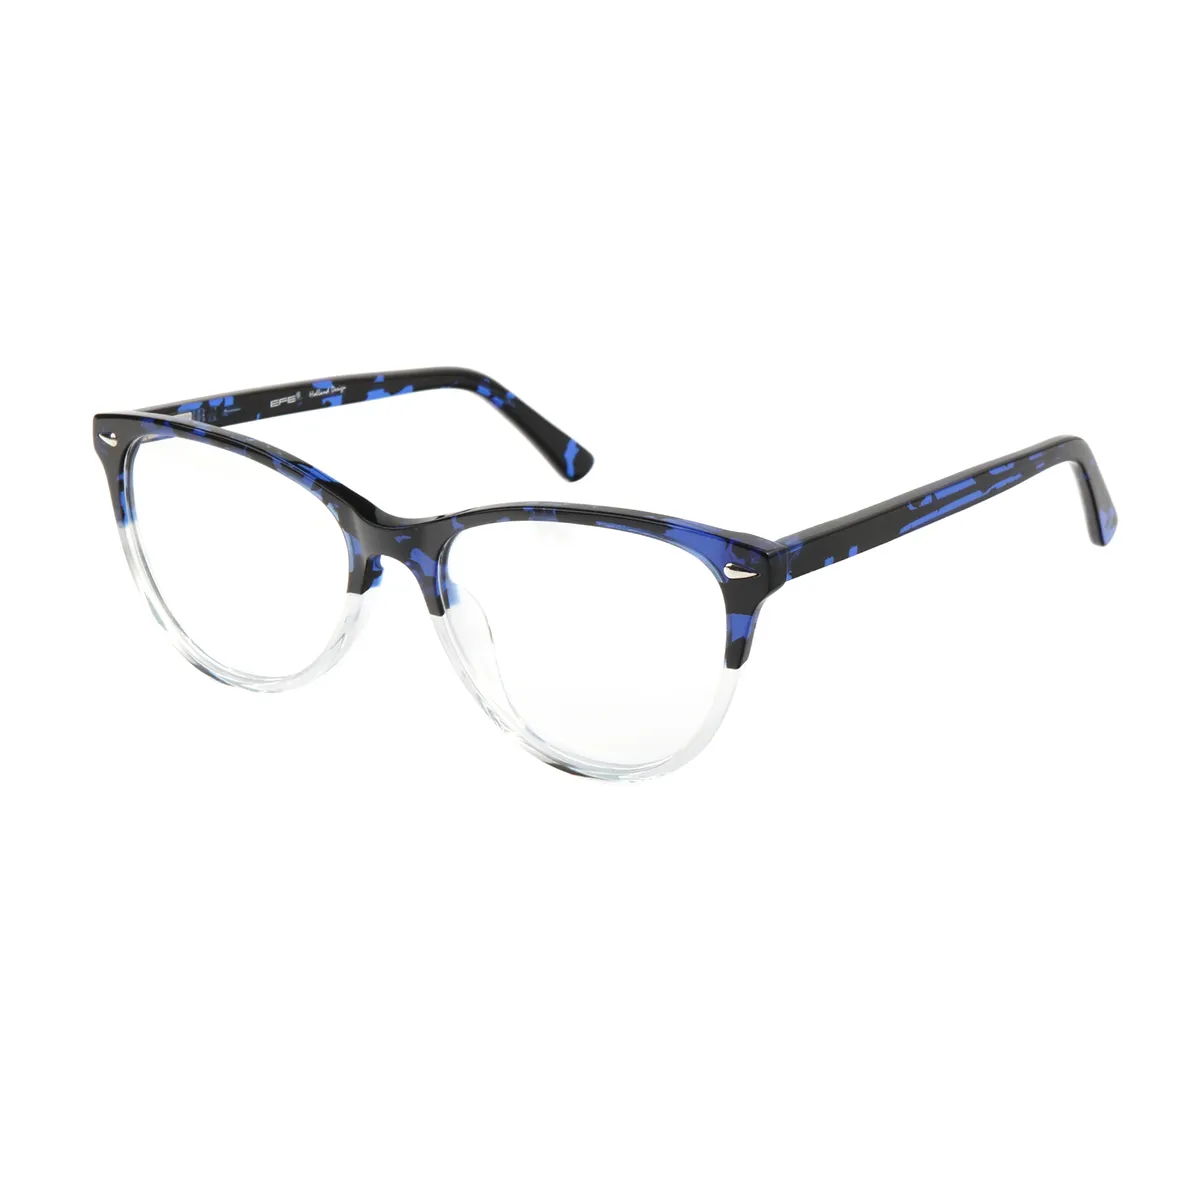 Jone - Oval Blue-Tortoiseshell Glasses for Women - EFE